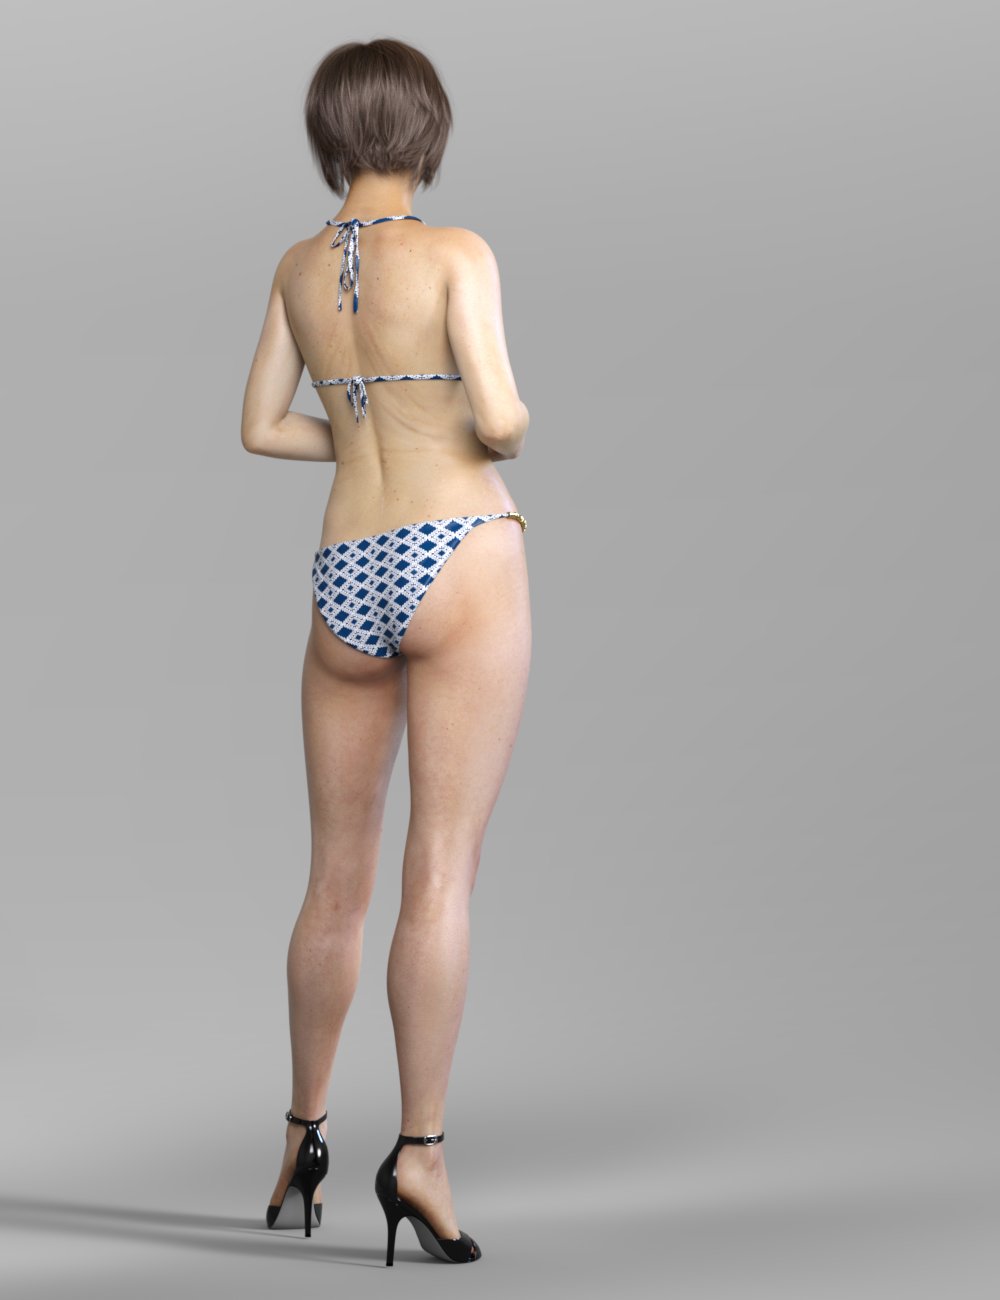 RY Martha for Genesis 8 Female by: Raiya, 3D Models by Daz 3D